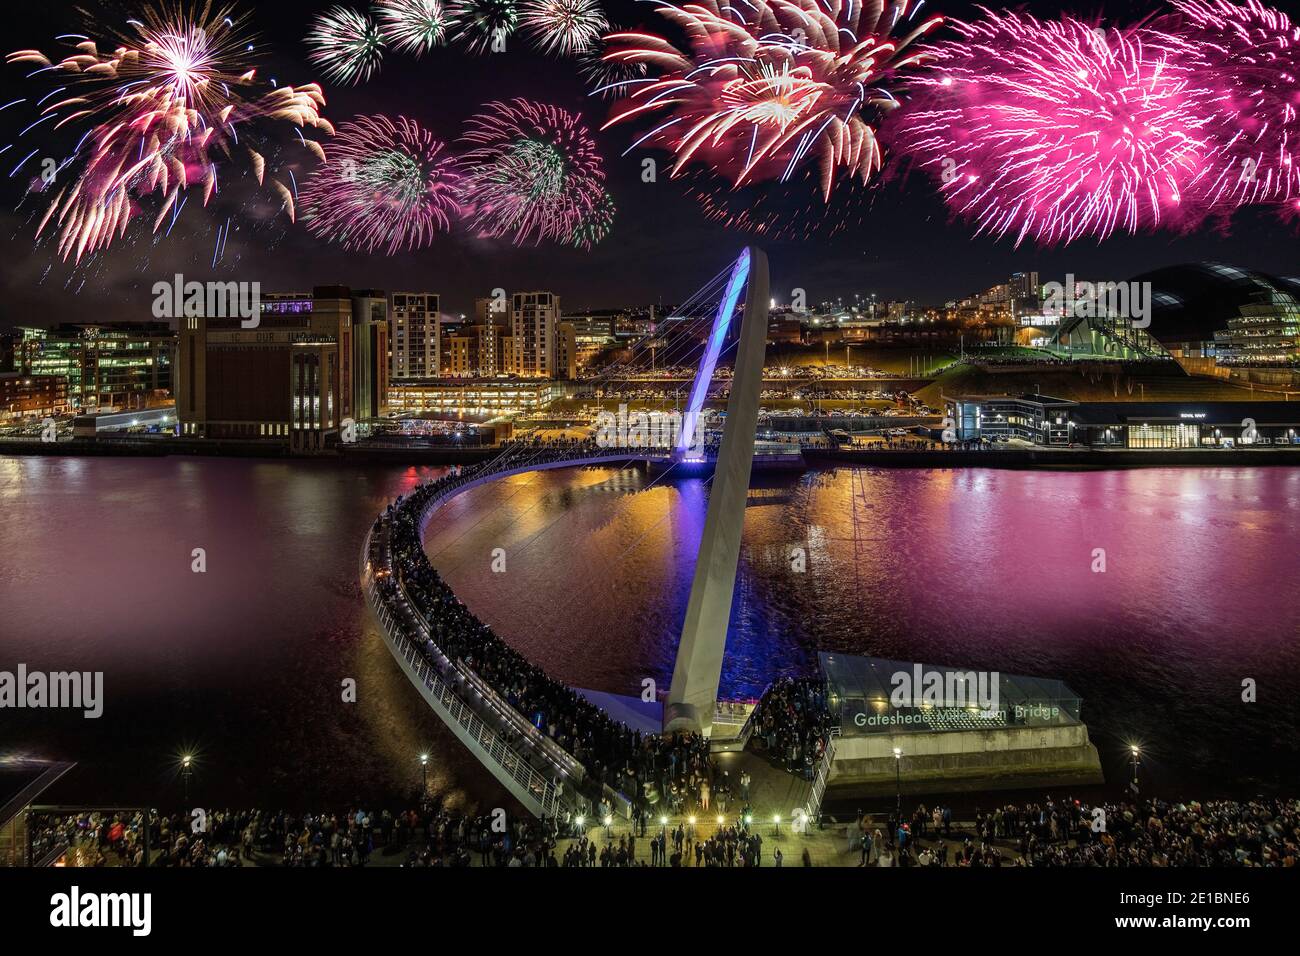 Spettacolo di fuochi d'artificio durante la vigilia di Capodanno sulla banchina di Newcastle e Gateshead, Newcastle upon Tyne, Inghilterra, Regno Unito Foto Stock